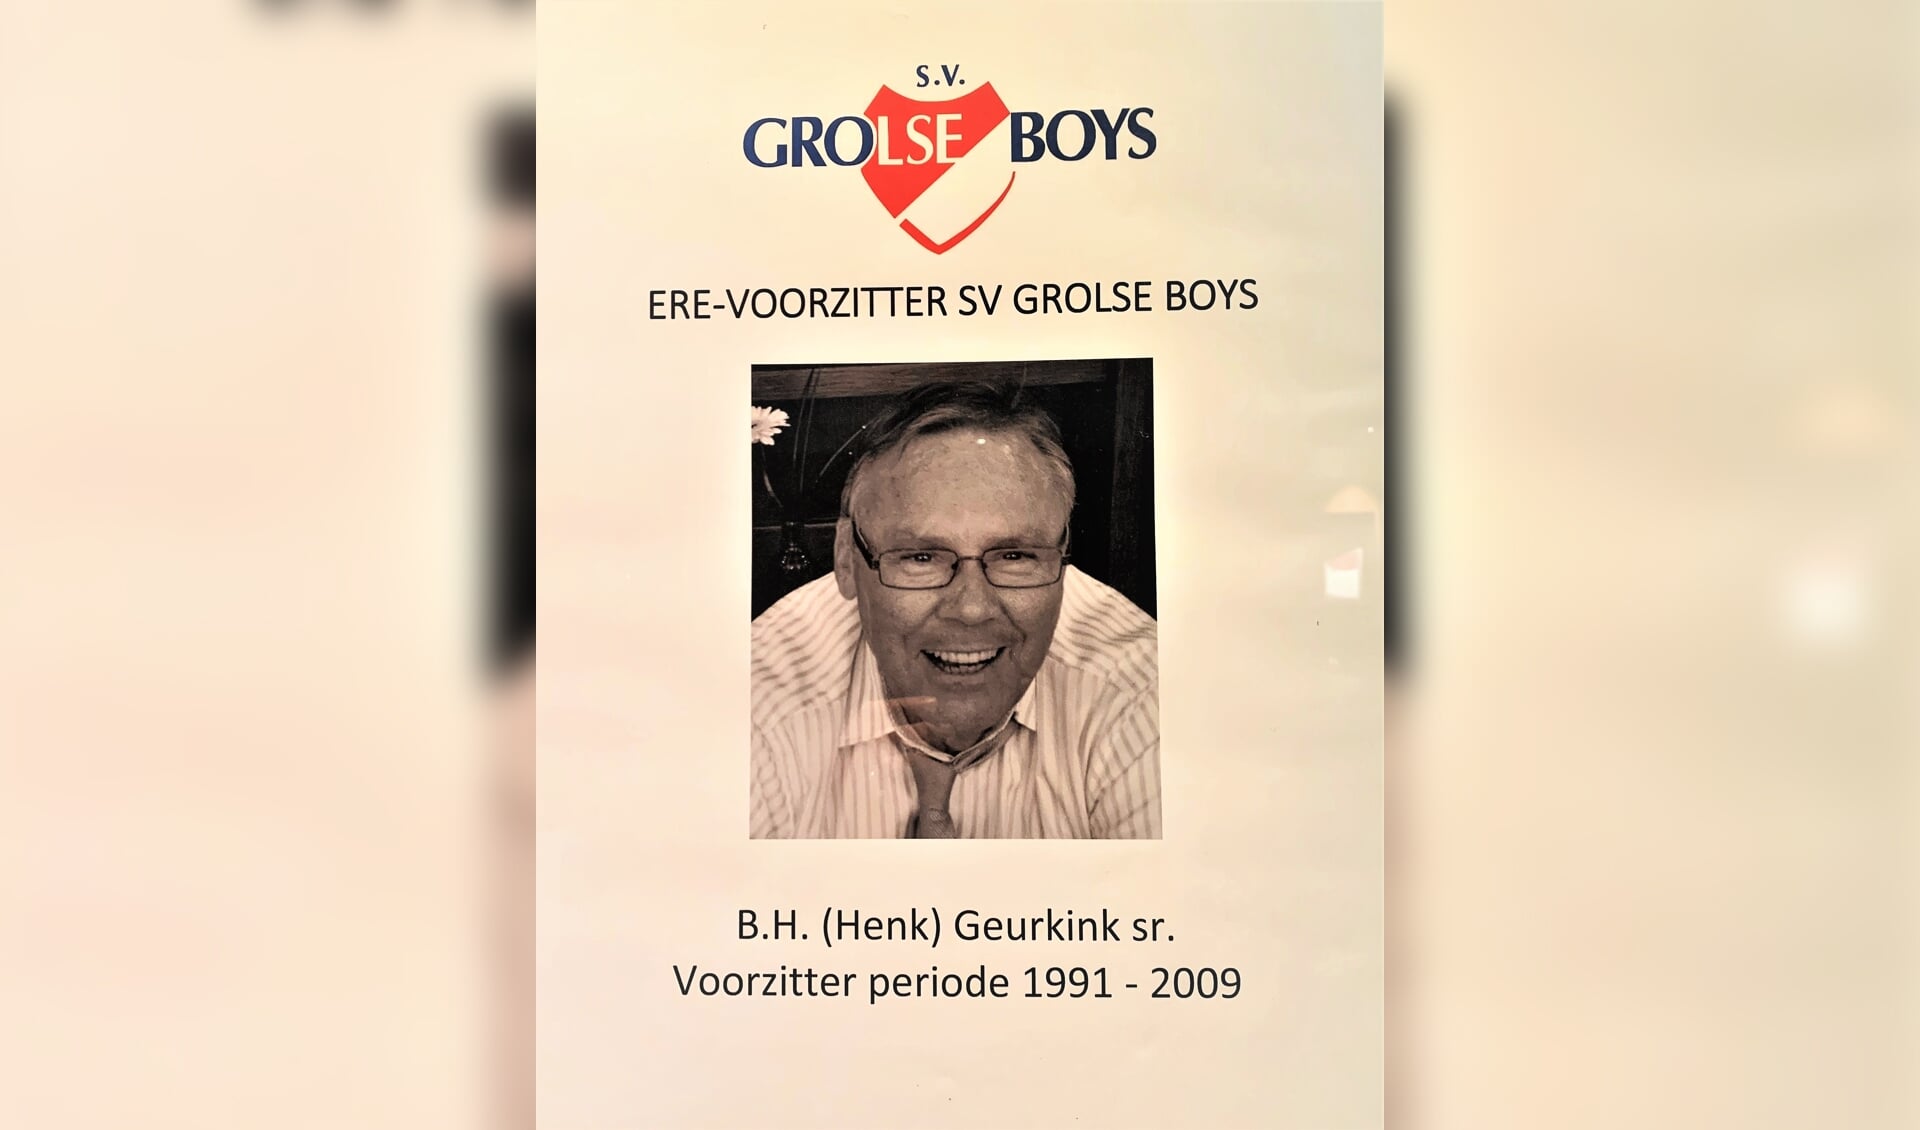 De herinnering aan Erevoorzitter Henk Geurkink van Grolse Boys wordt hooggehouden. Foto: Theo Huijskes